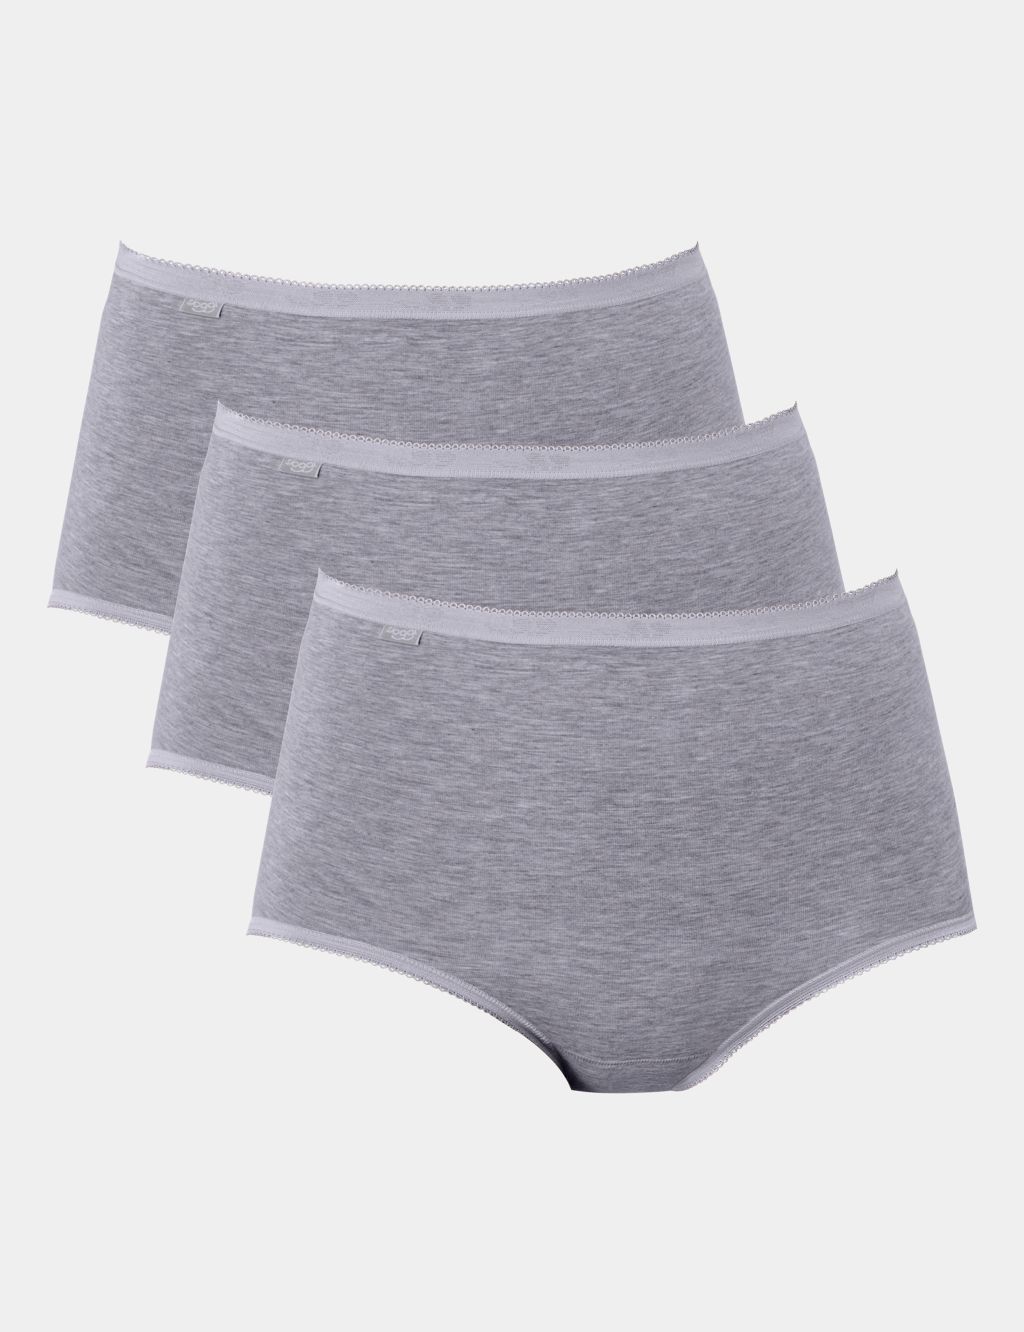 Sloggi WOW Comfort 2.0 High Waist Brief - Maxi - Briefs - Underwear -  Upperty.co.uk